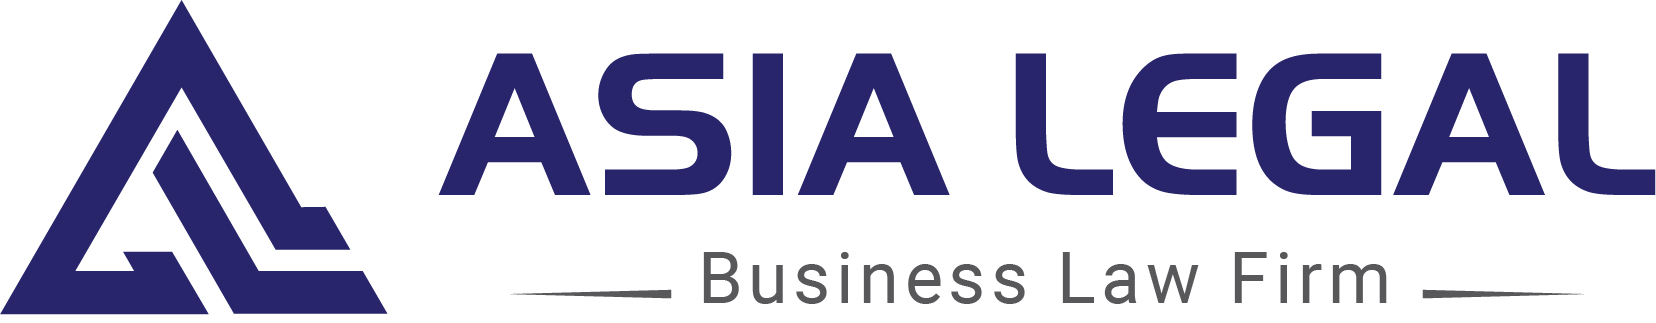 Asia Legal_Logo_Full